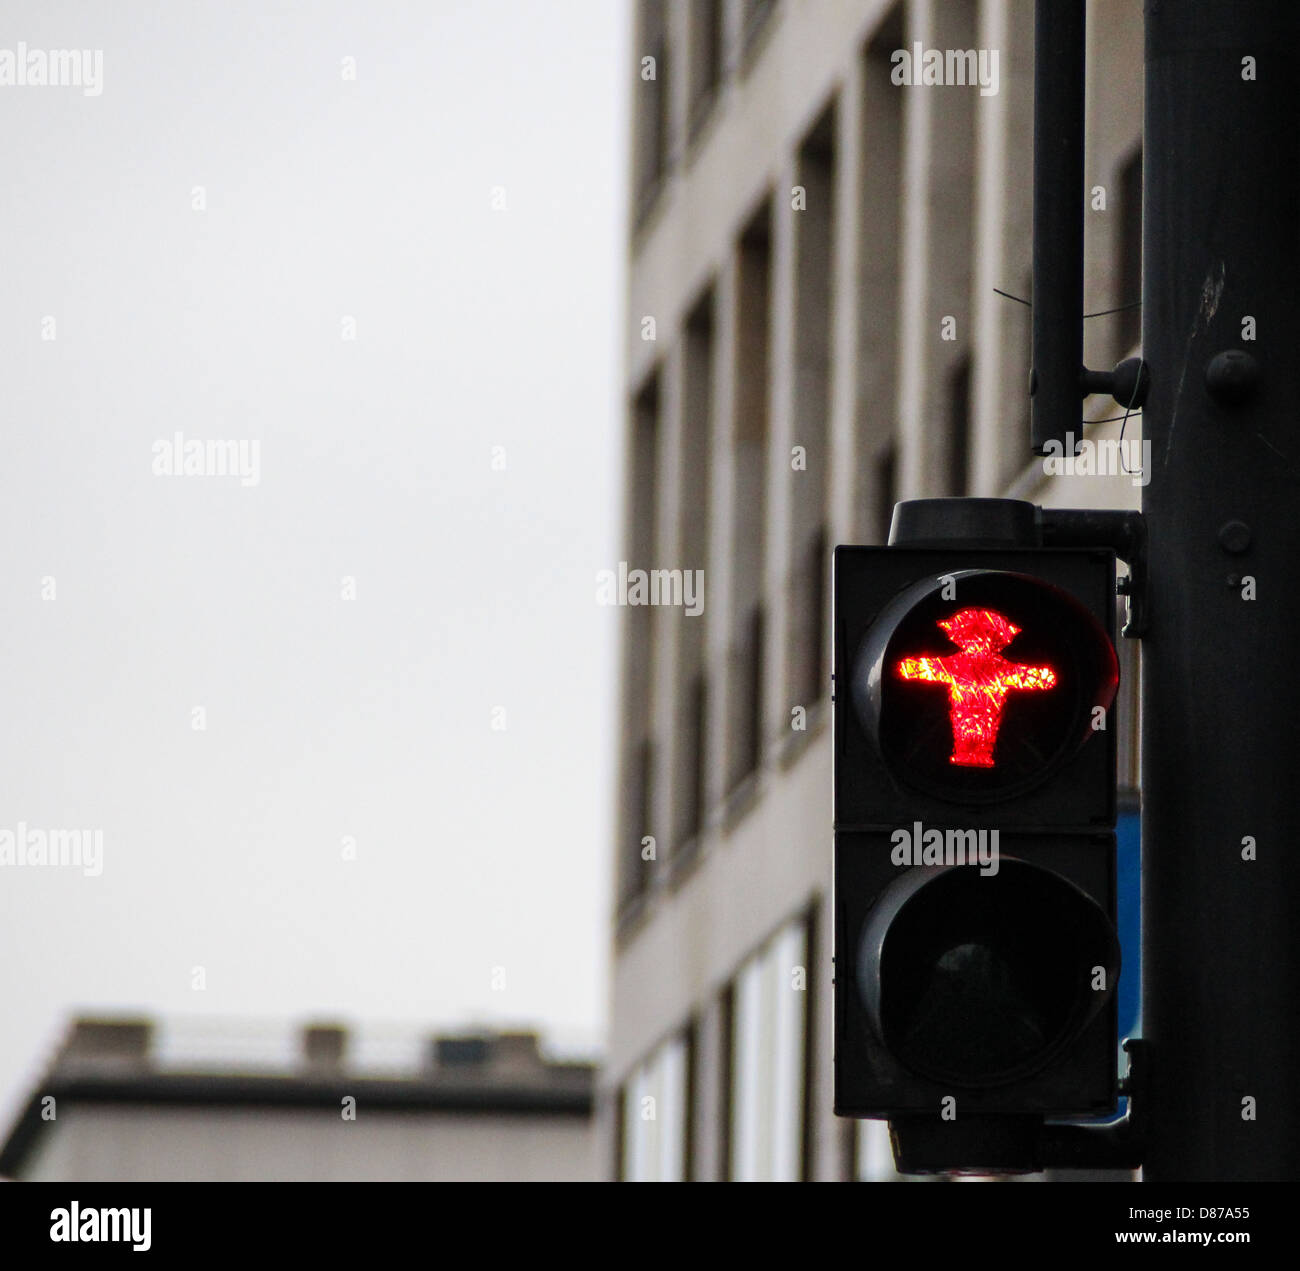 Semáforos peatonales en Berlín, con el tradicional rojo poco hombre ampelmann, símbolo de todos los semáforos en Berlín. Foto de stock